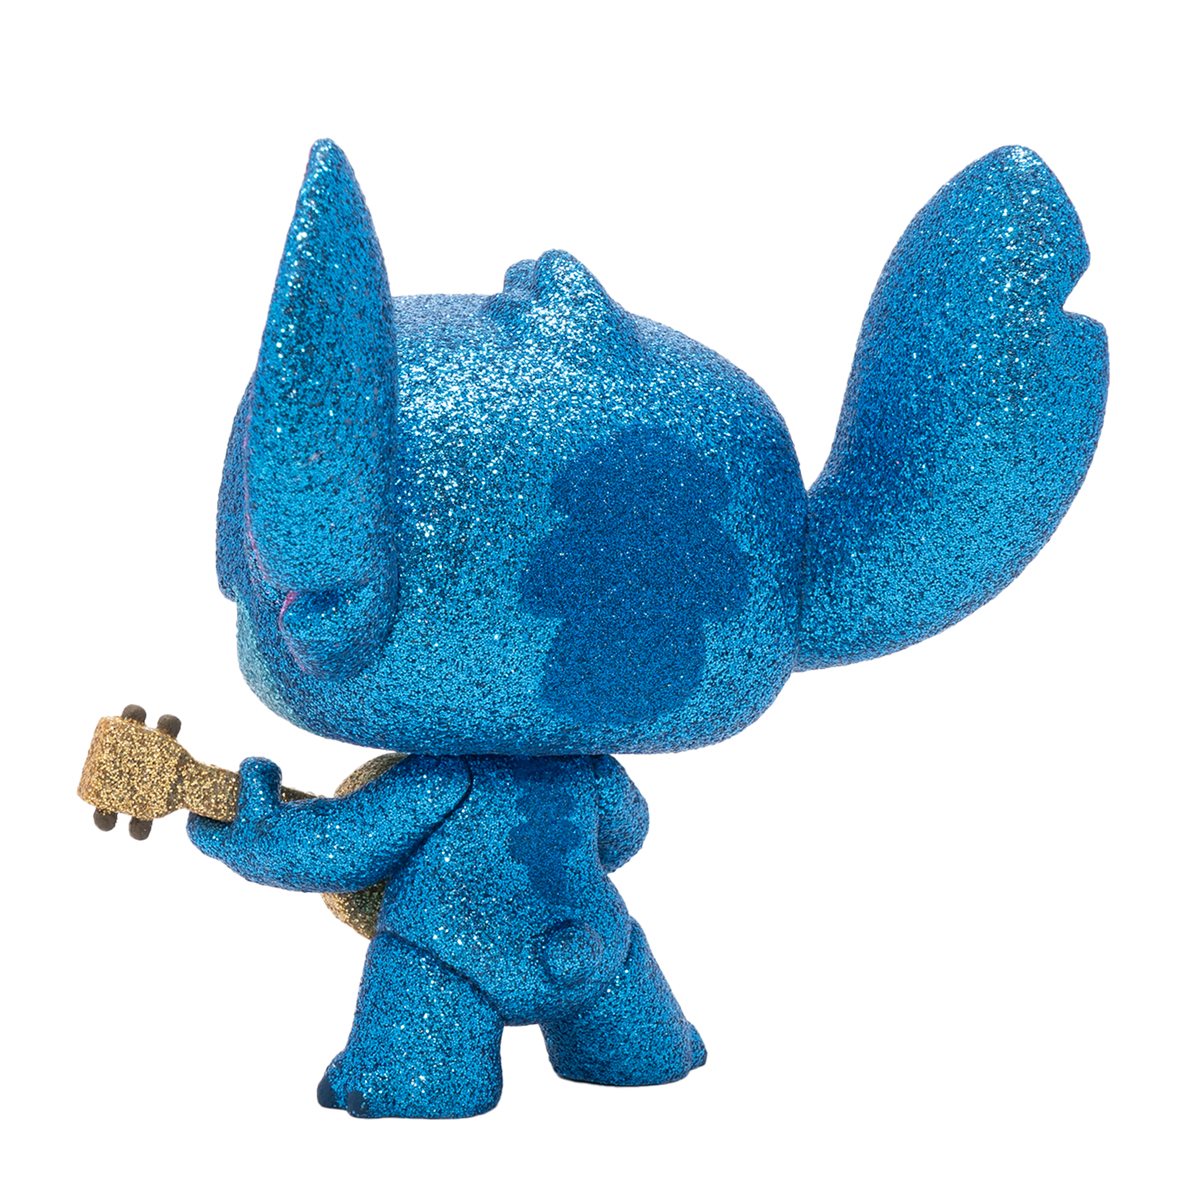 Funko Pop Disney: Lilo y Stitch - Stitch Con Ukelele — Distrito Max